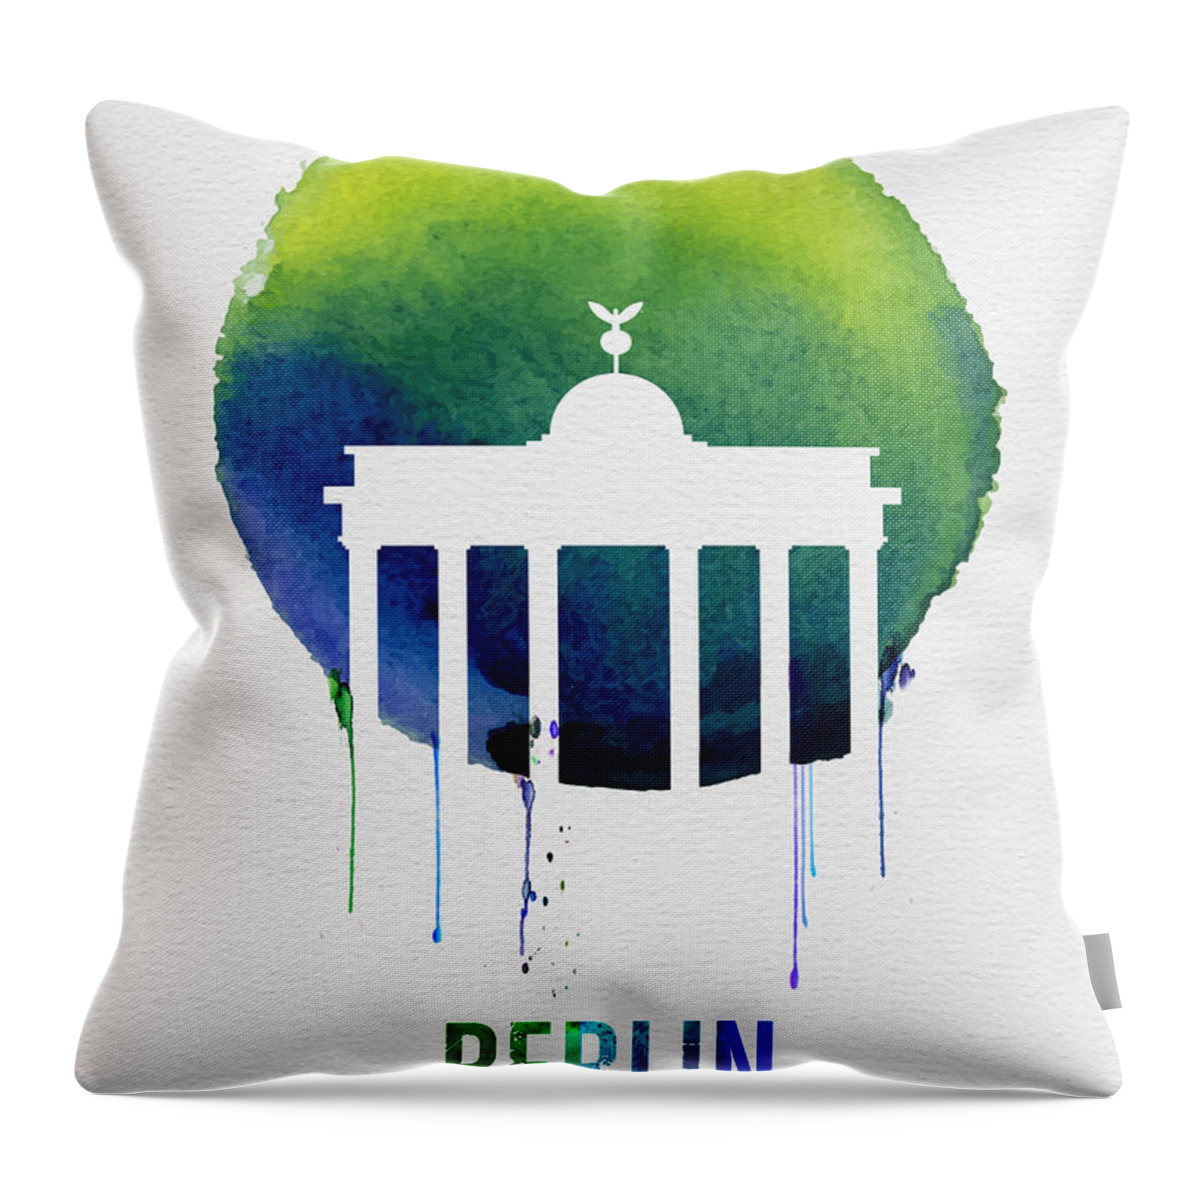 Berlin Throw Pillow featuring the digital art Berlin Landmark Blue by Naxart Studio